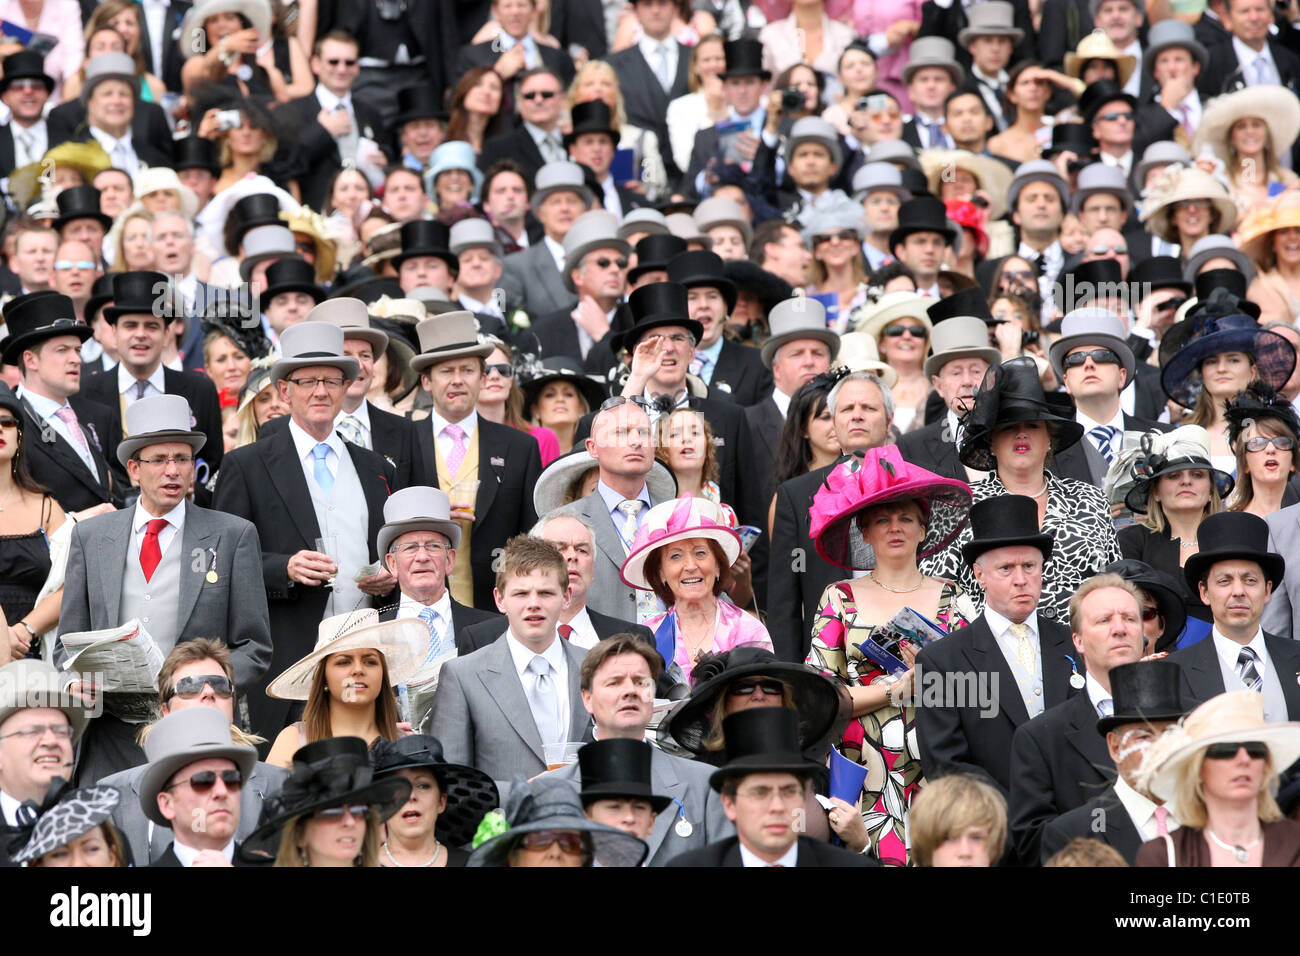 Elegantly dressed people at a horse race, Epsom, United Kingdom Stock Photo